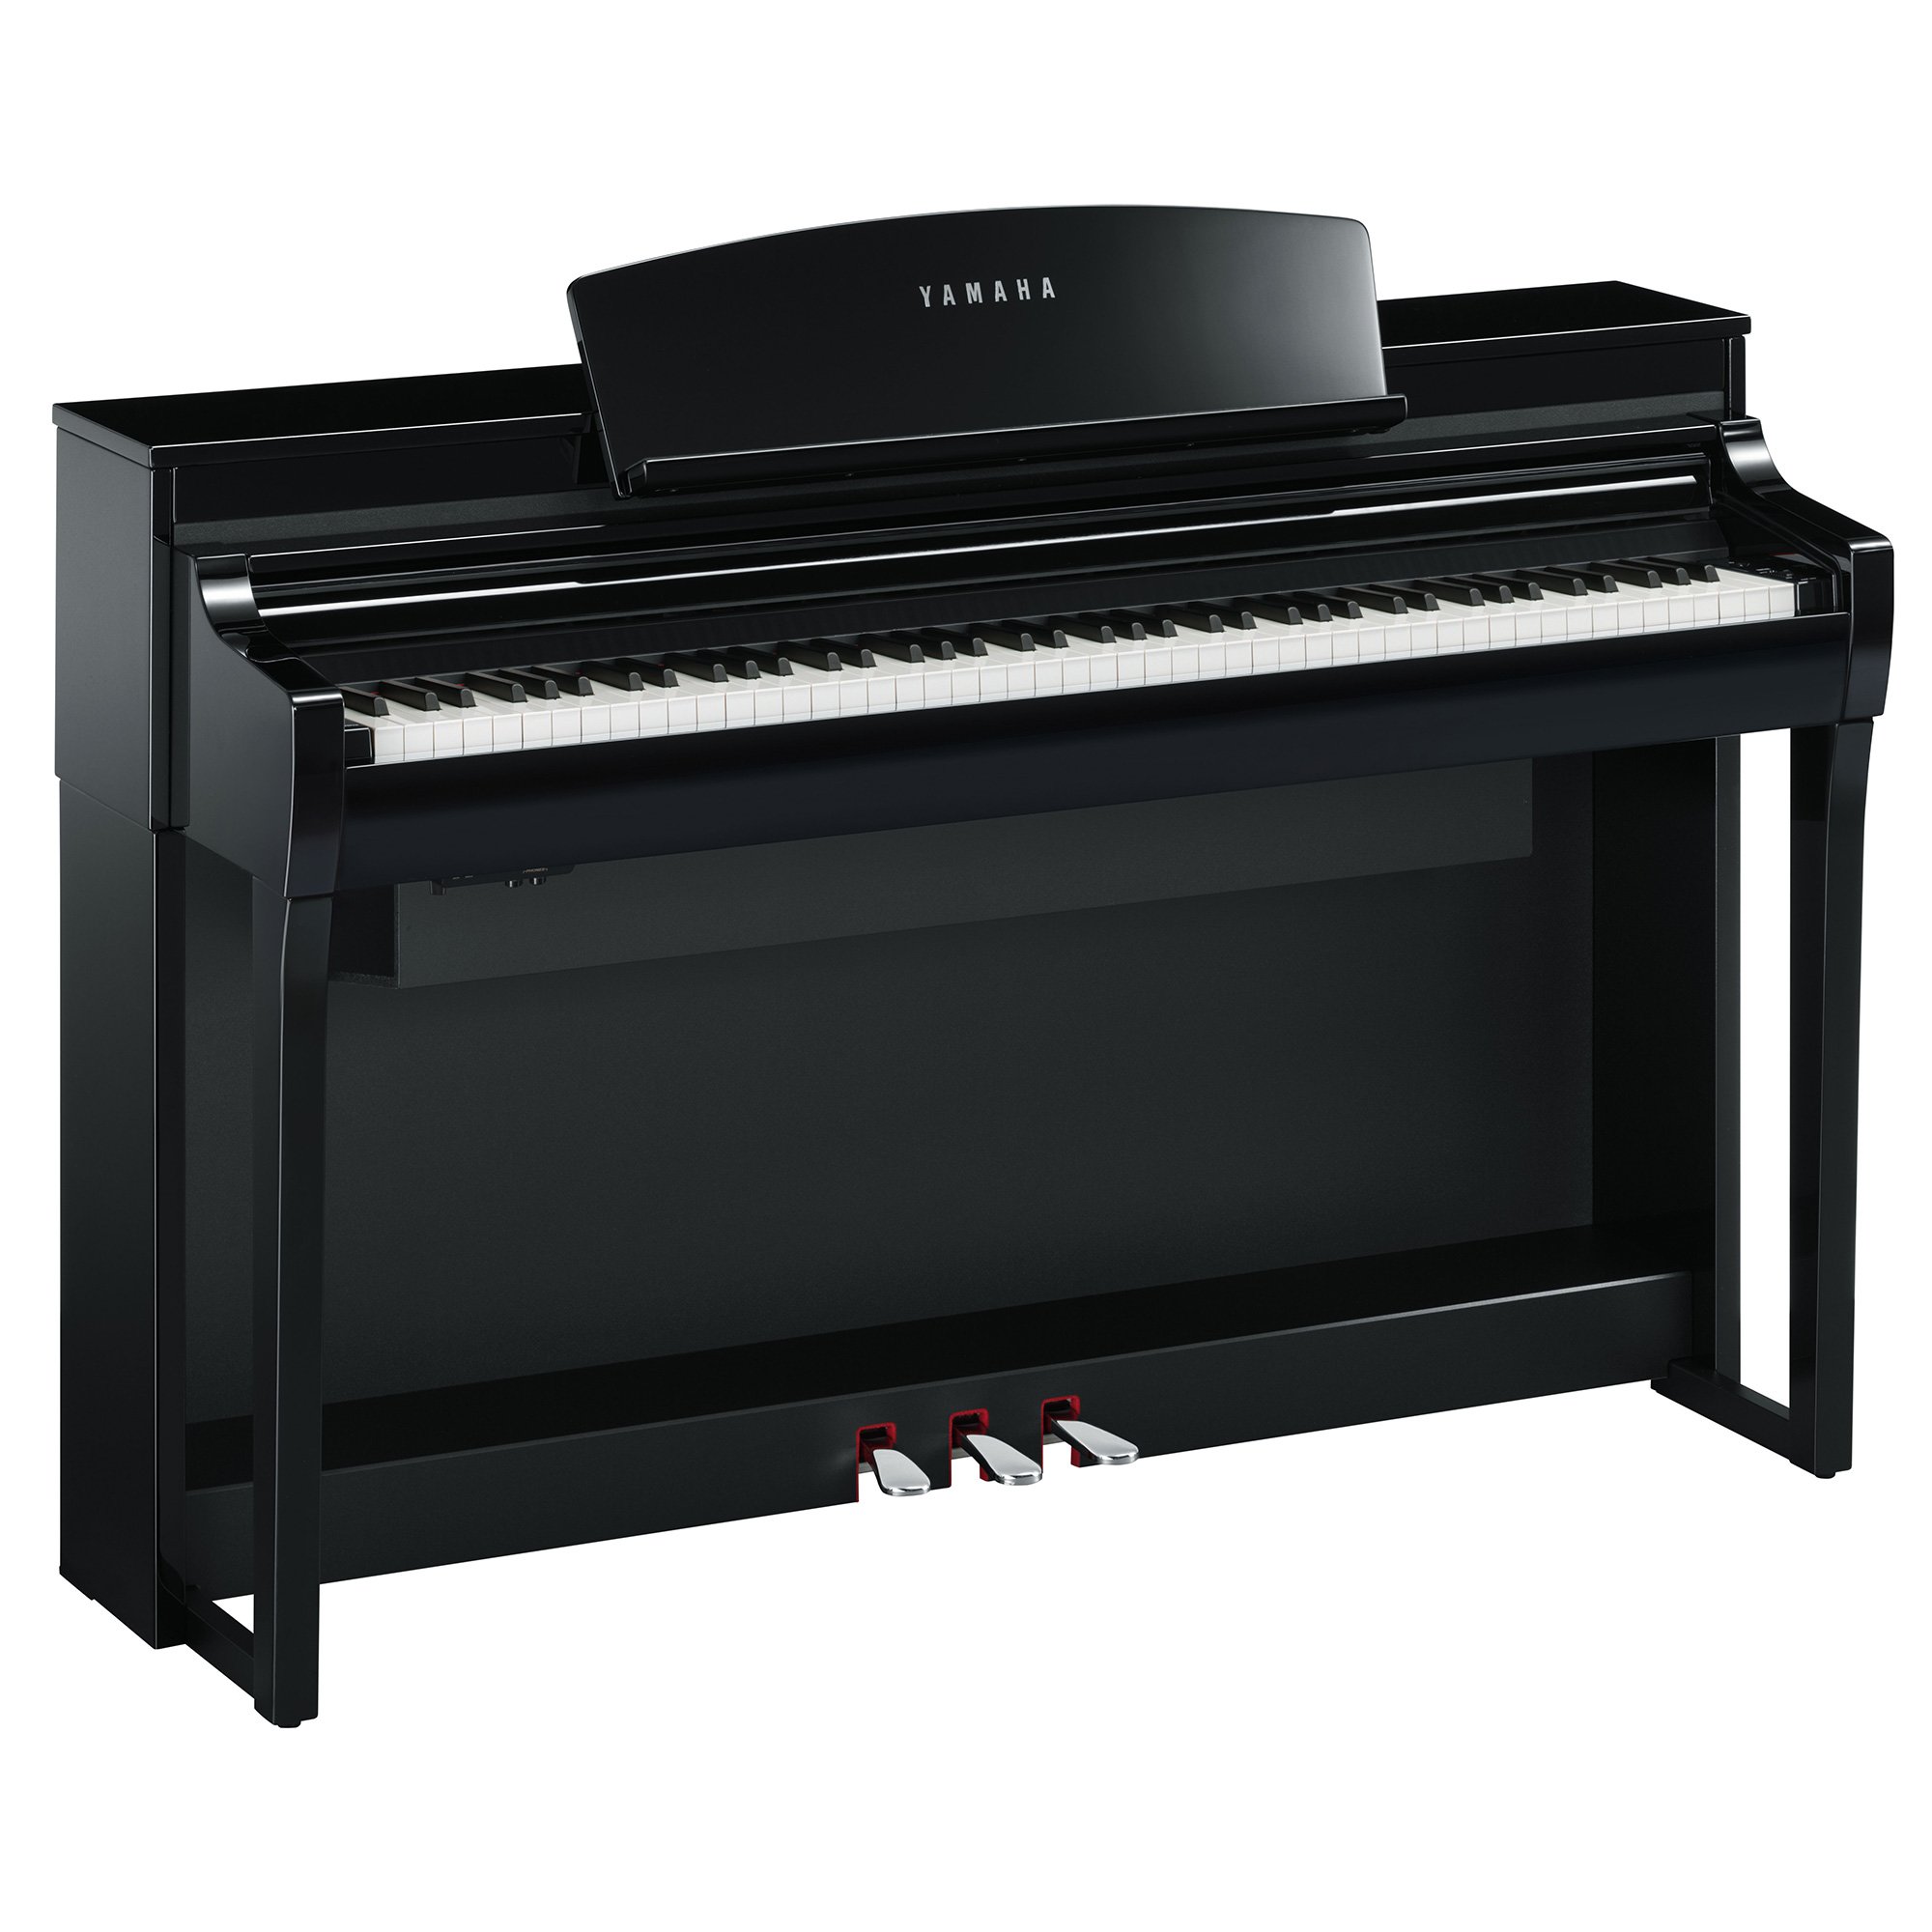 値下げしました❗️YAMAHA電子ピアノクラビノーバ[購入価格378,000円